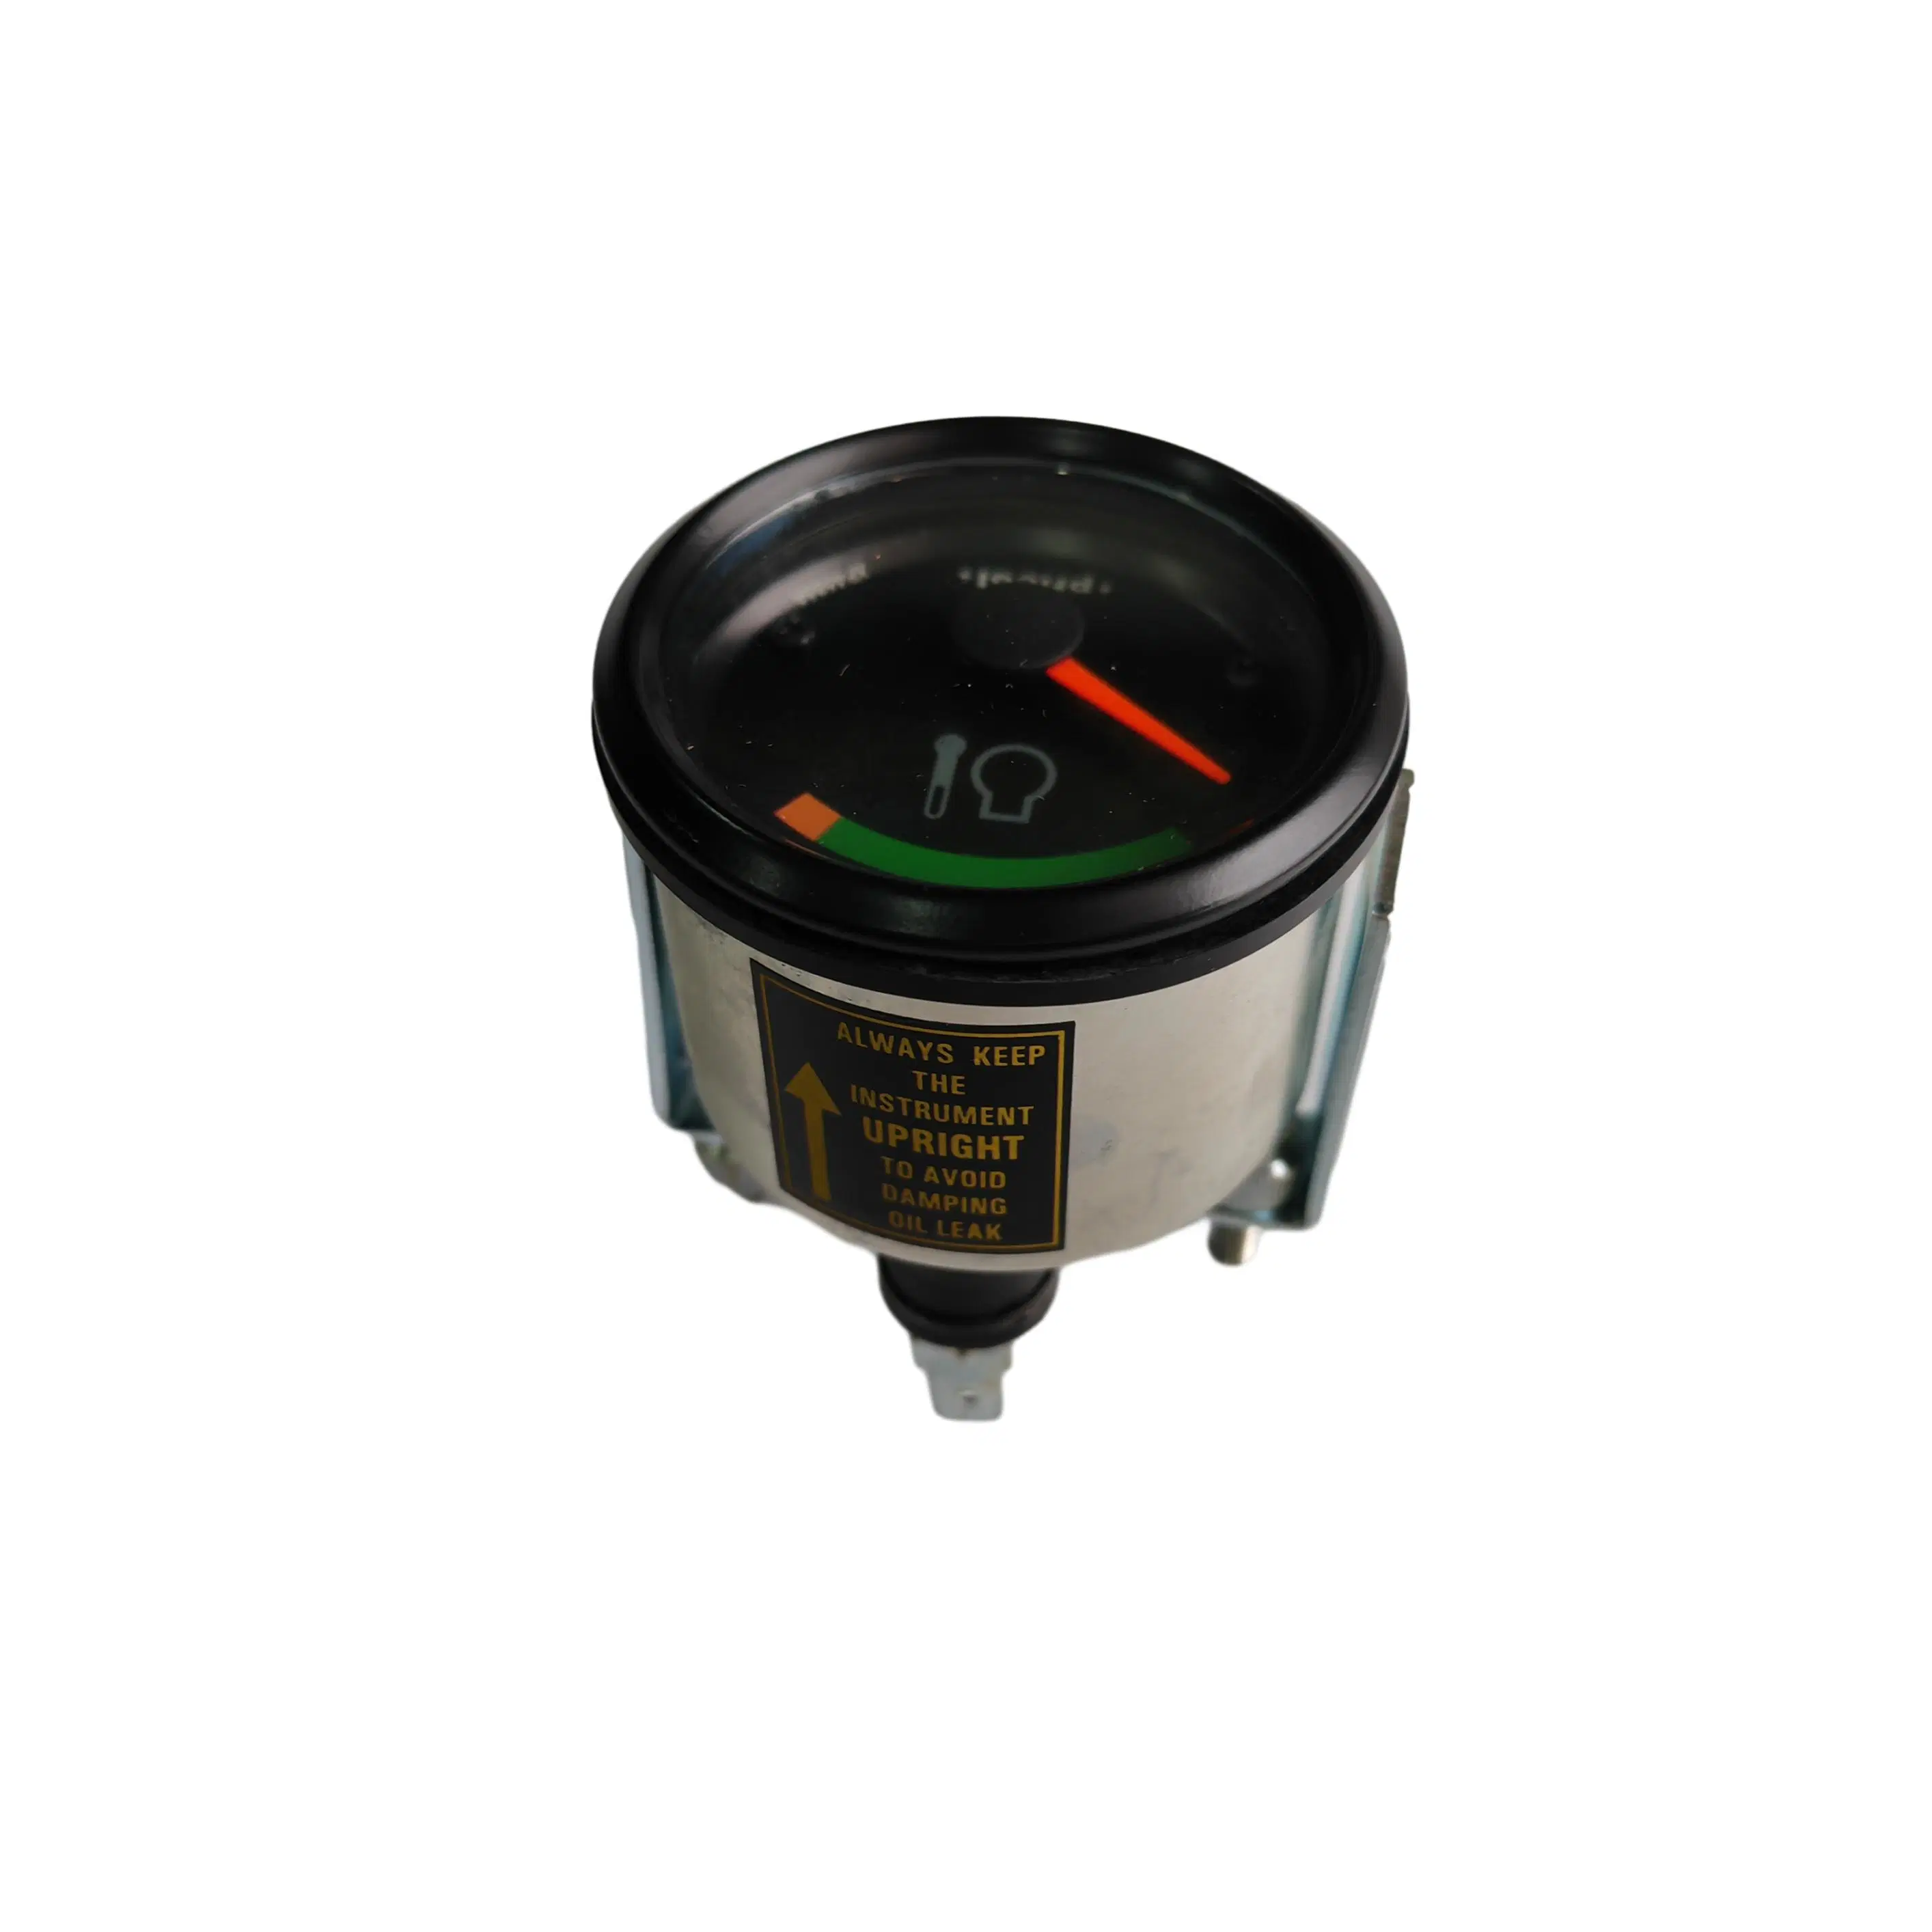 DEUTZ Maschinerie Motorteil Temperaturmessgerät Manometer 01182567 24V mit Pricol Logo für FL413 Motor